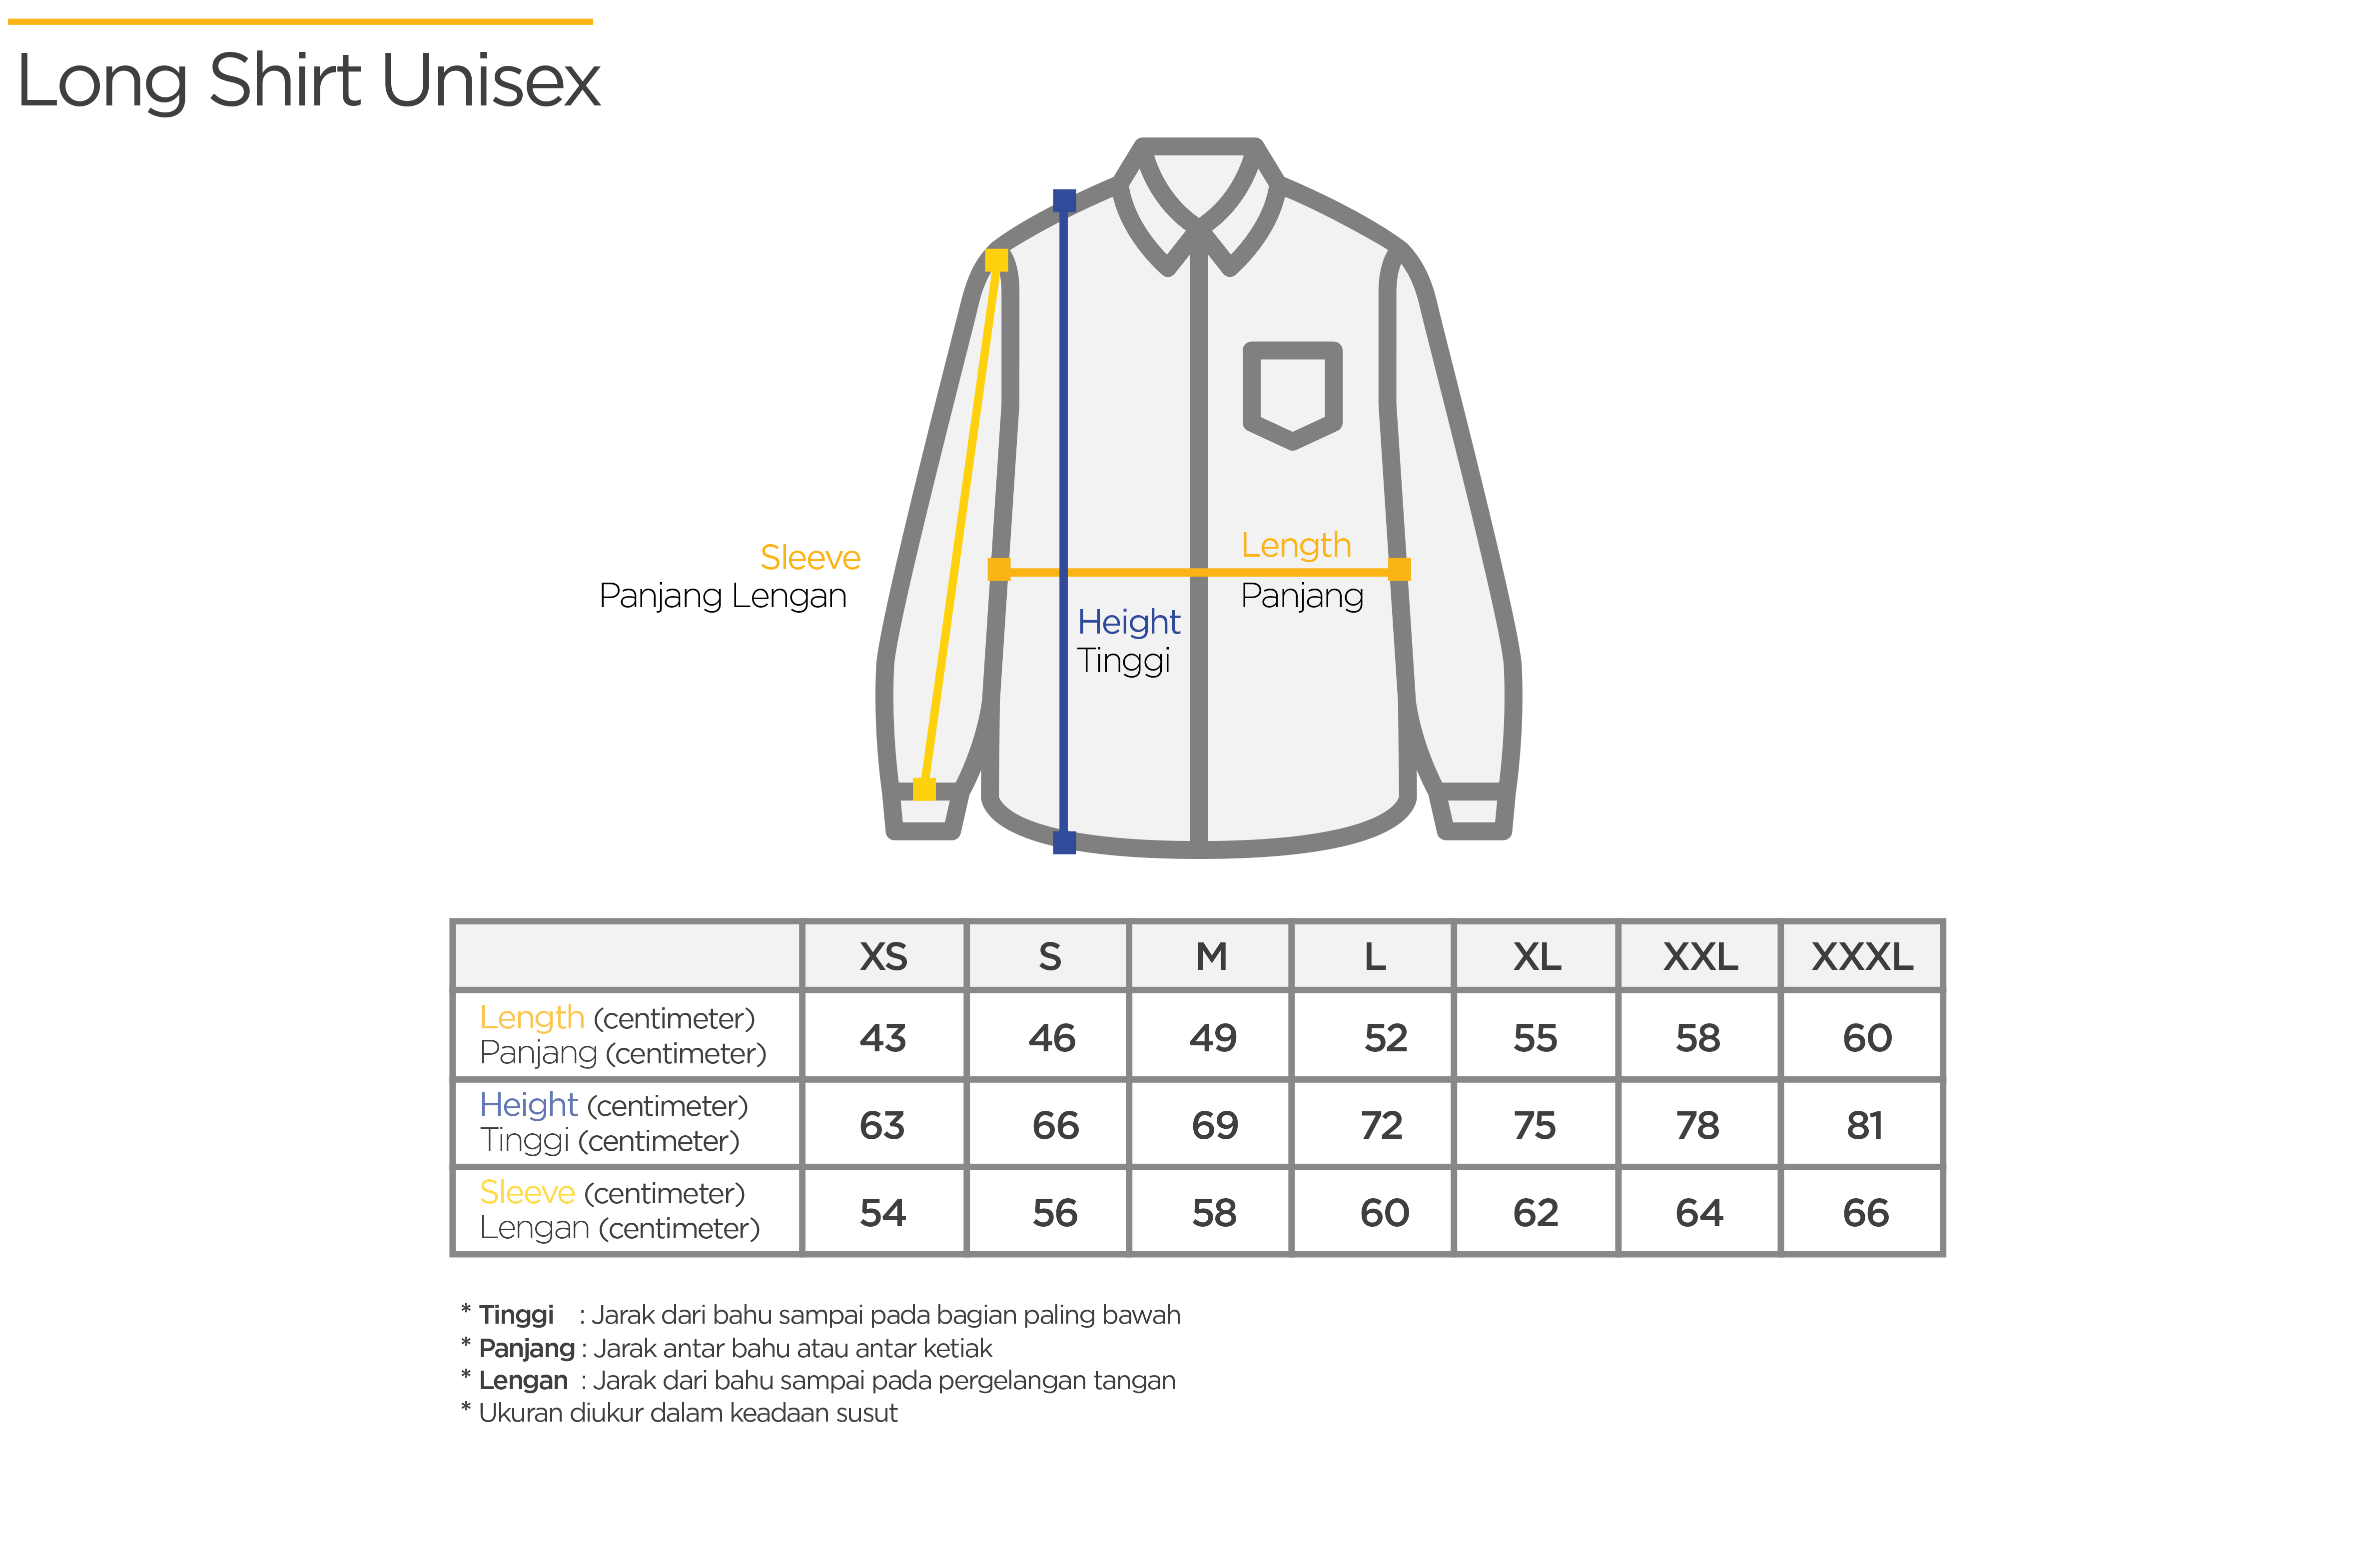 Aneka TC - Konveksi dan Garmen Size Chart